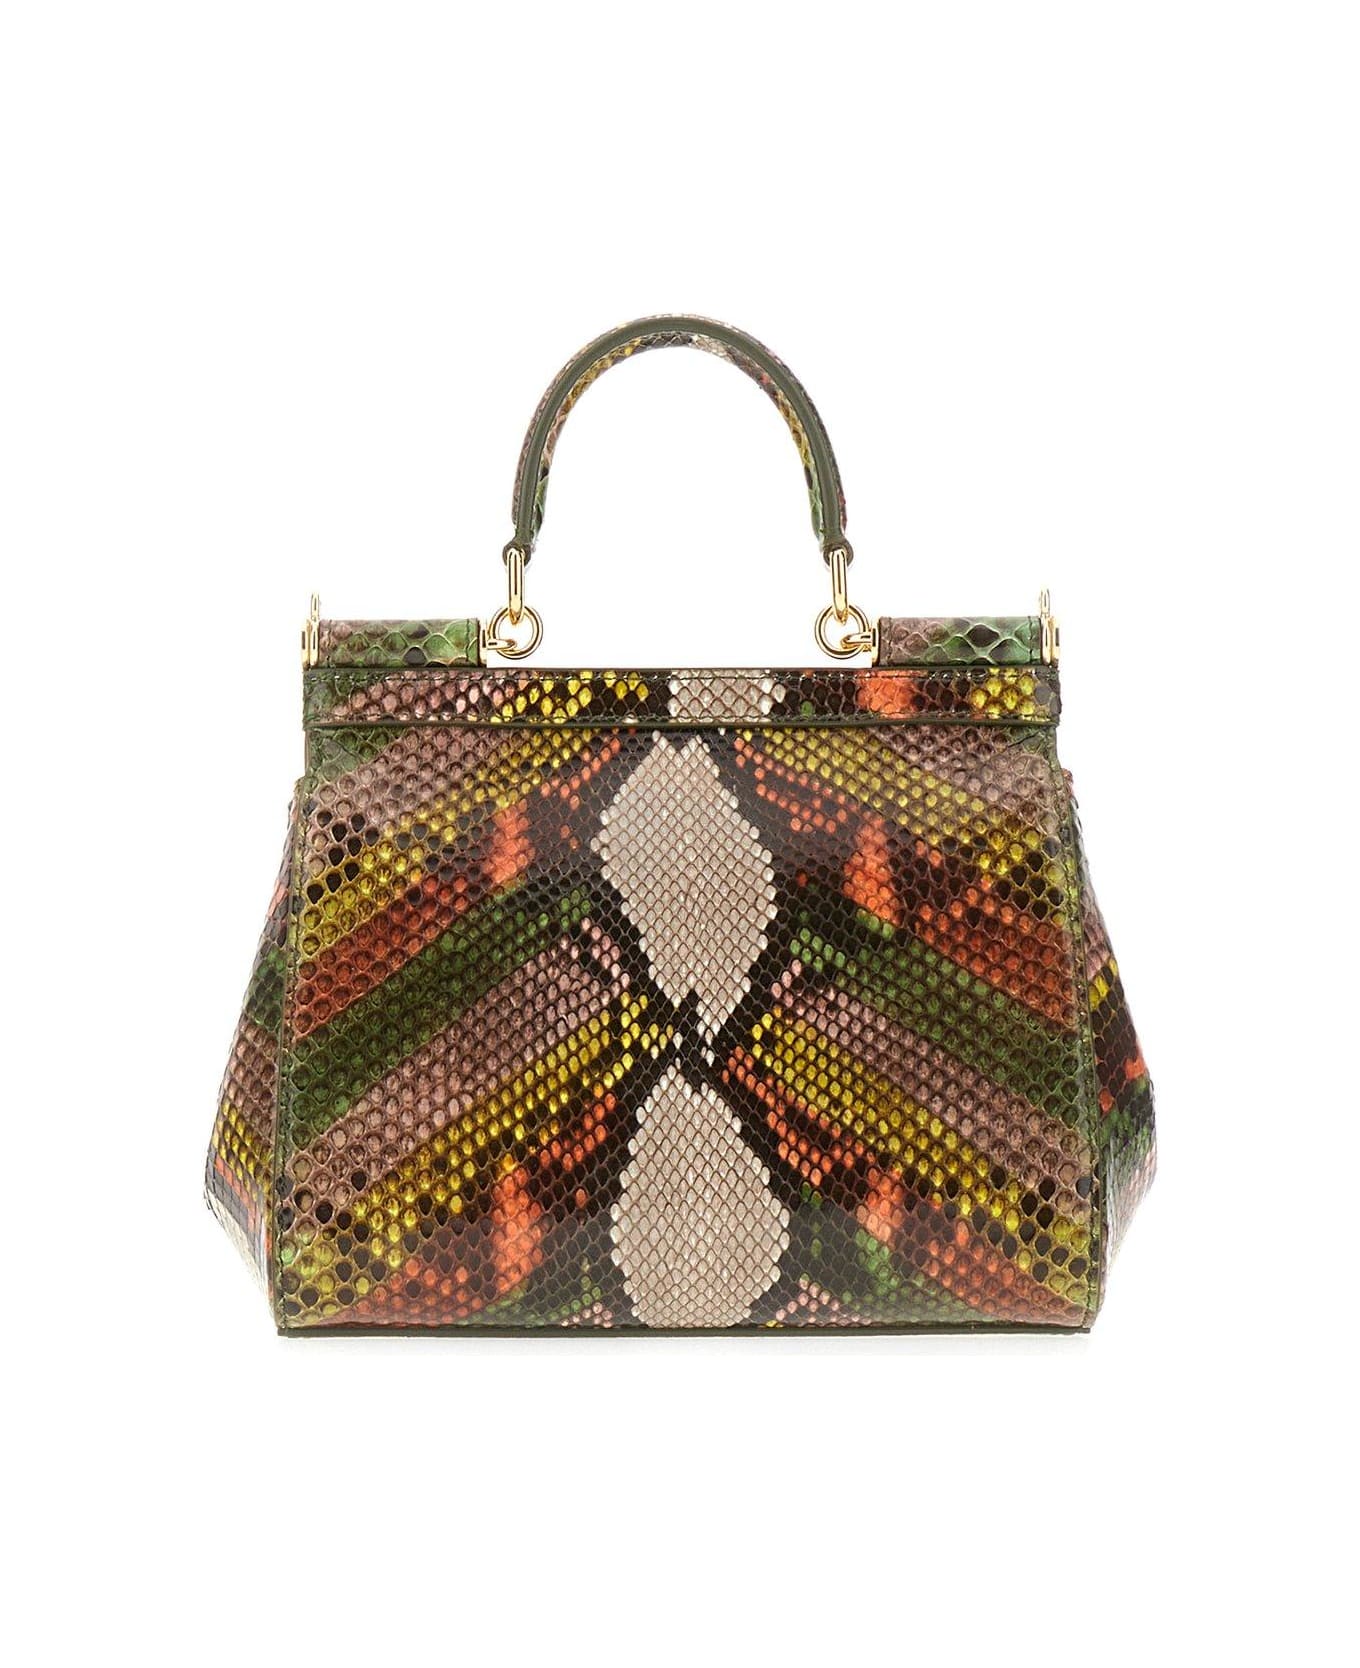 Dolce & Gabbana Medium Sicily Handbag - Multicolor verde トートバッグ